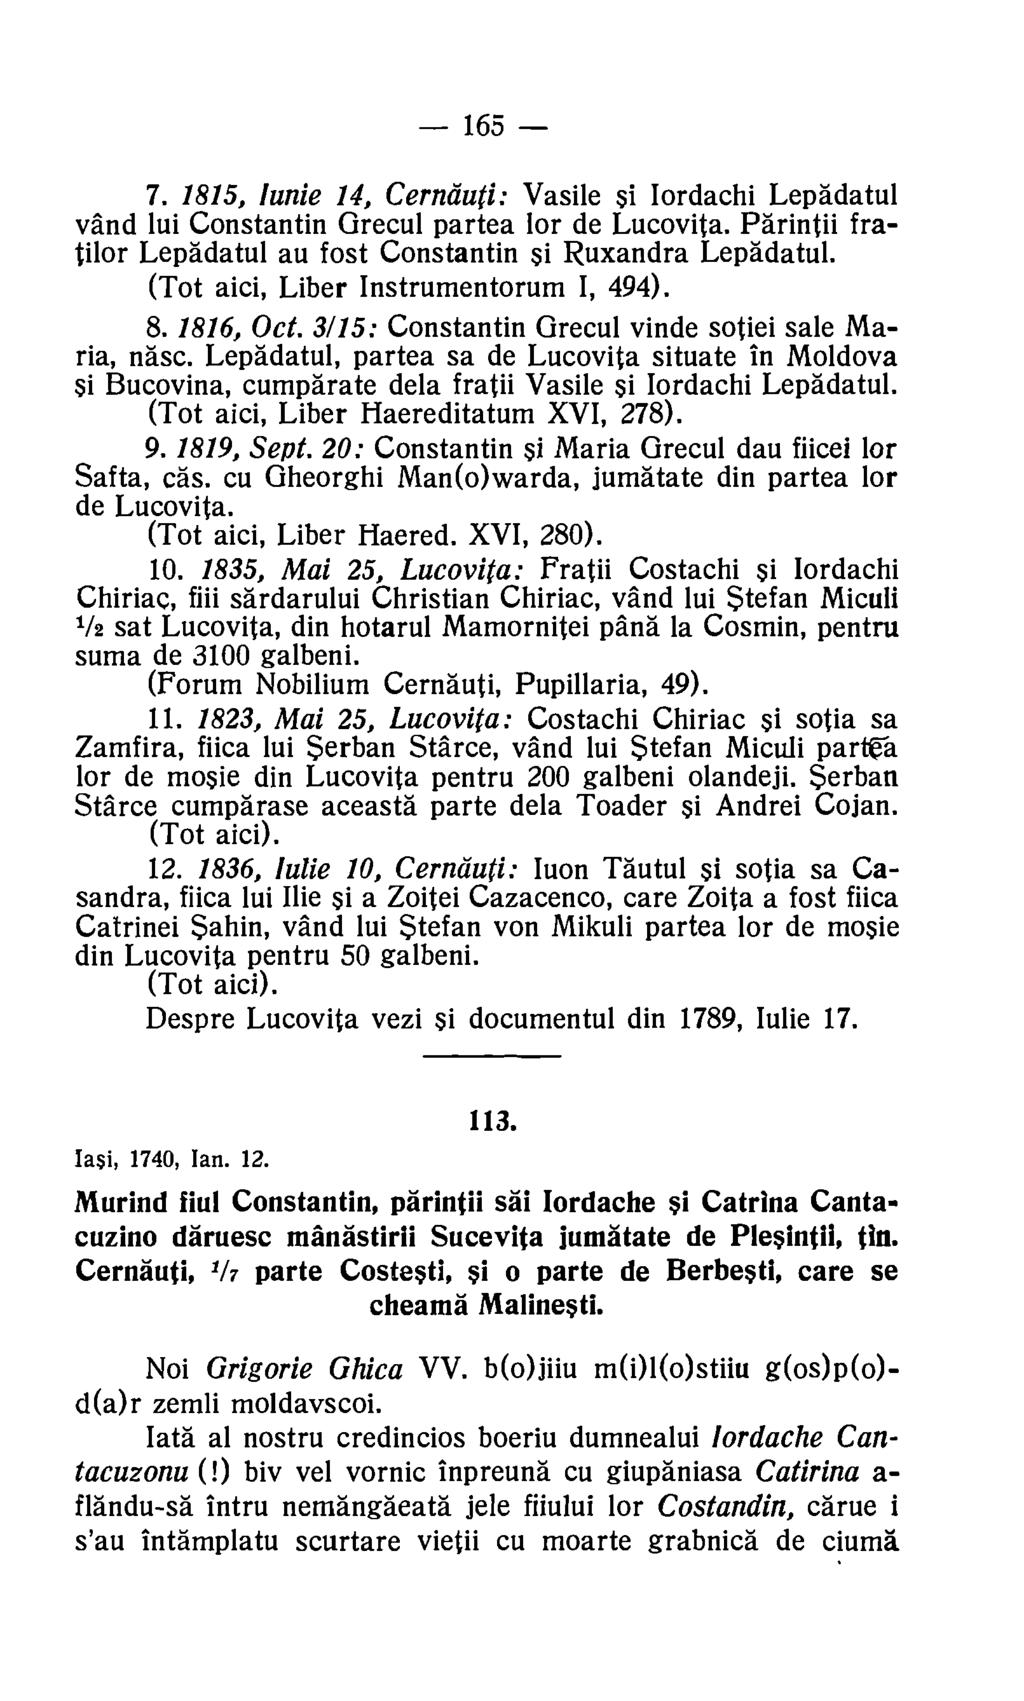 165 7. 1815, lunie 14, Cernduti: Vasile si Iordachi Lepadatul vand lui Constantin Grecul partea for de Lucovita. Parintii fratilor Lepadatul au fost Constantin si Ruxandra Lepadatul.